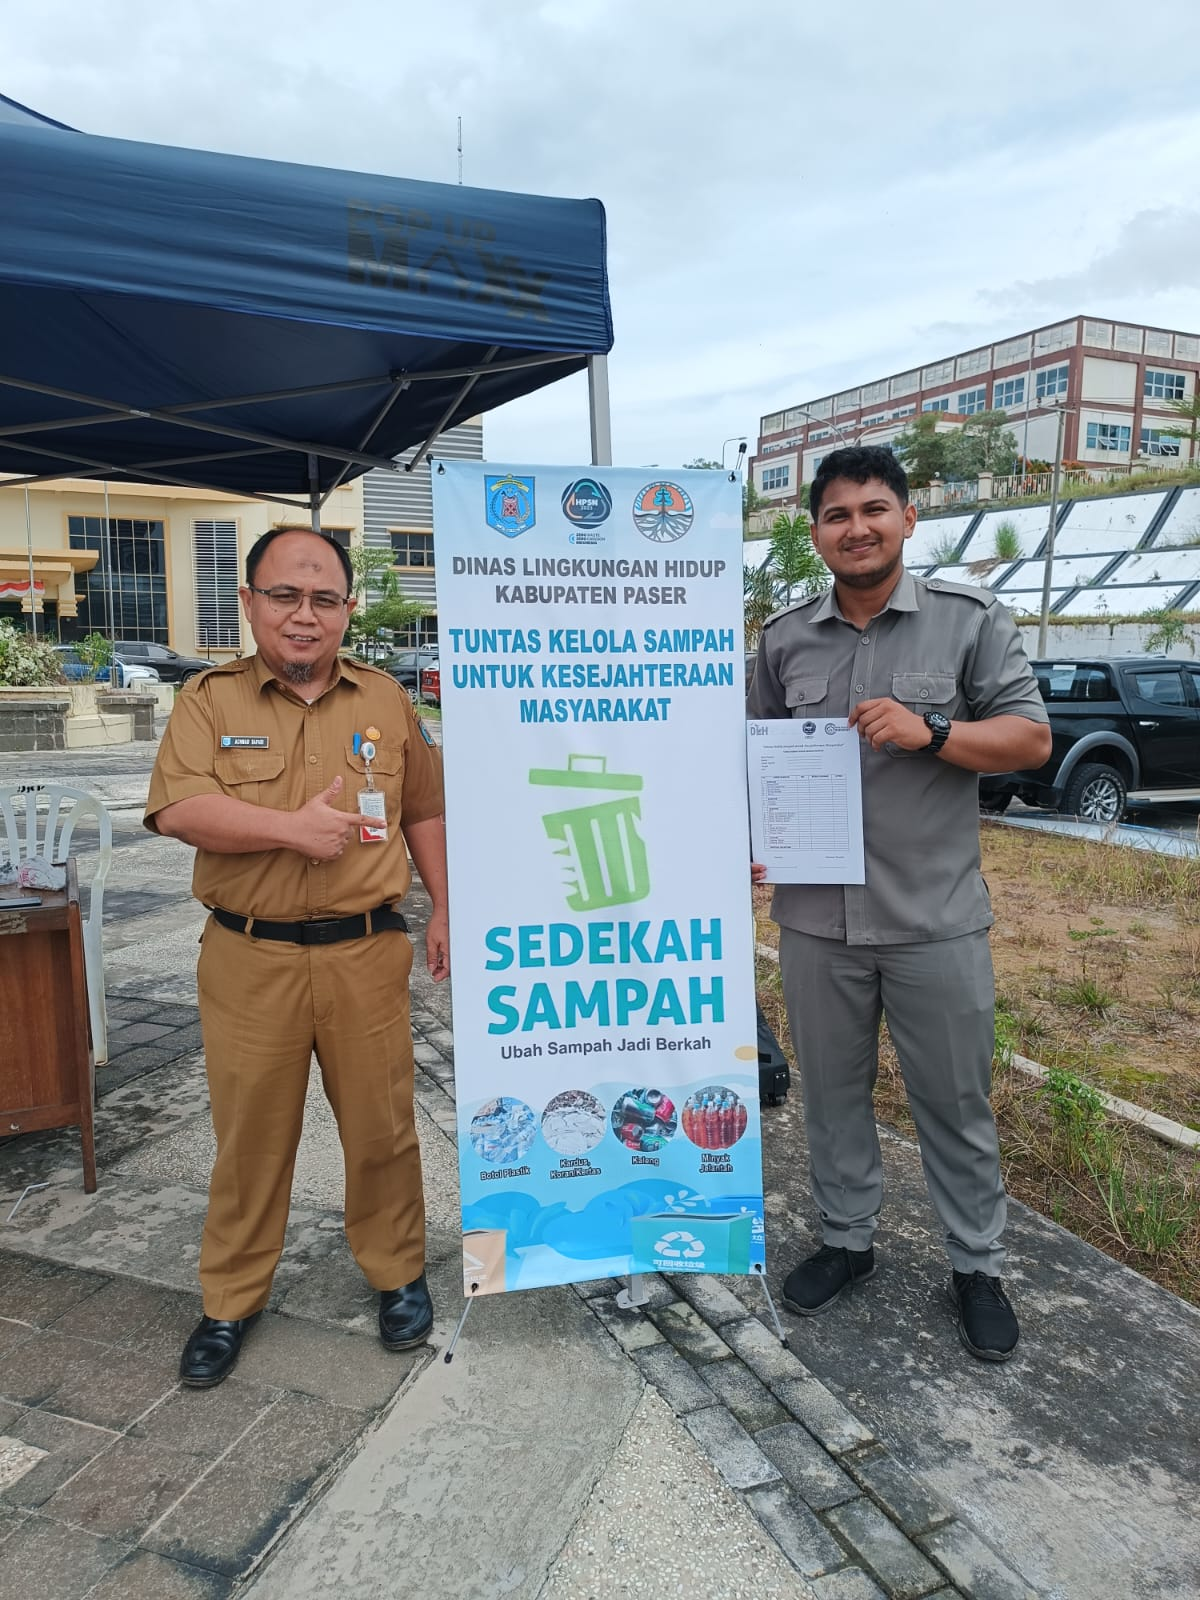 Memperingati HPSN Dinas Lingkungan Hidup Kabupaten Paser adakan kegiatan Sedekah Sampah